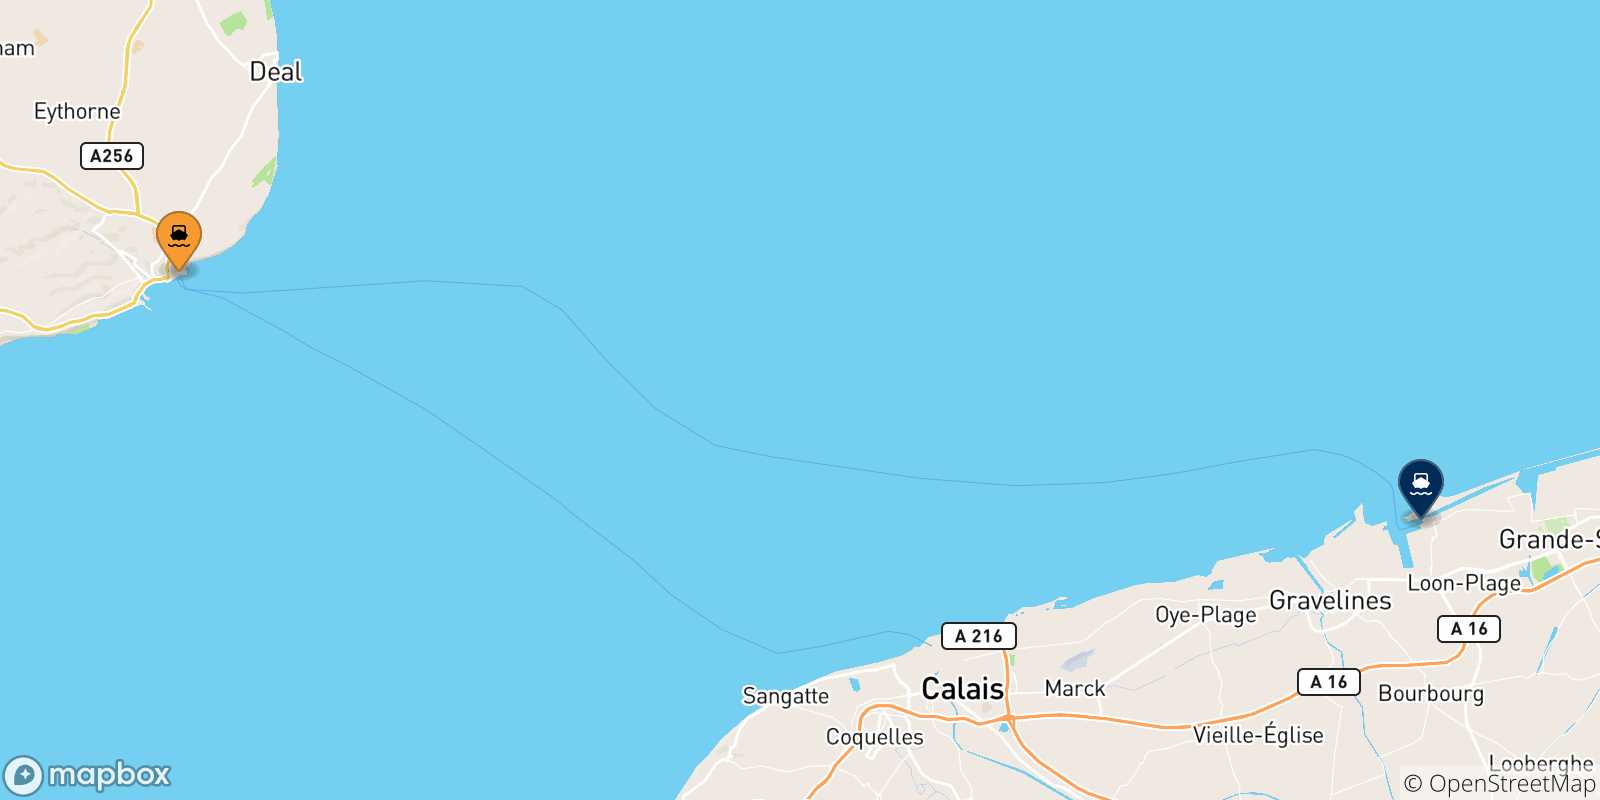 Mappa delle possibili rotte tra il Regno Unito e Dunkerque